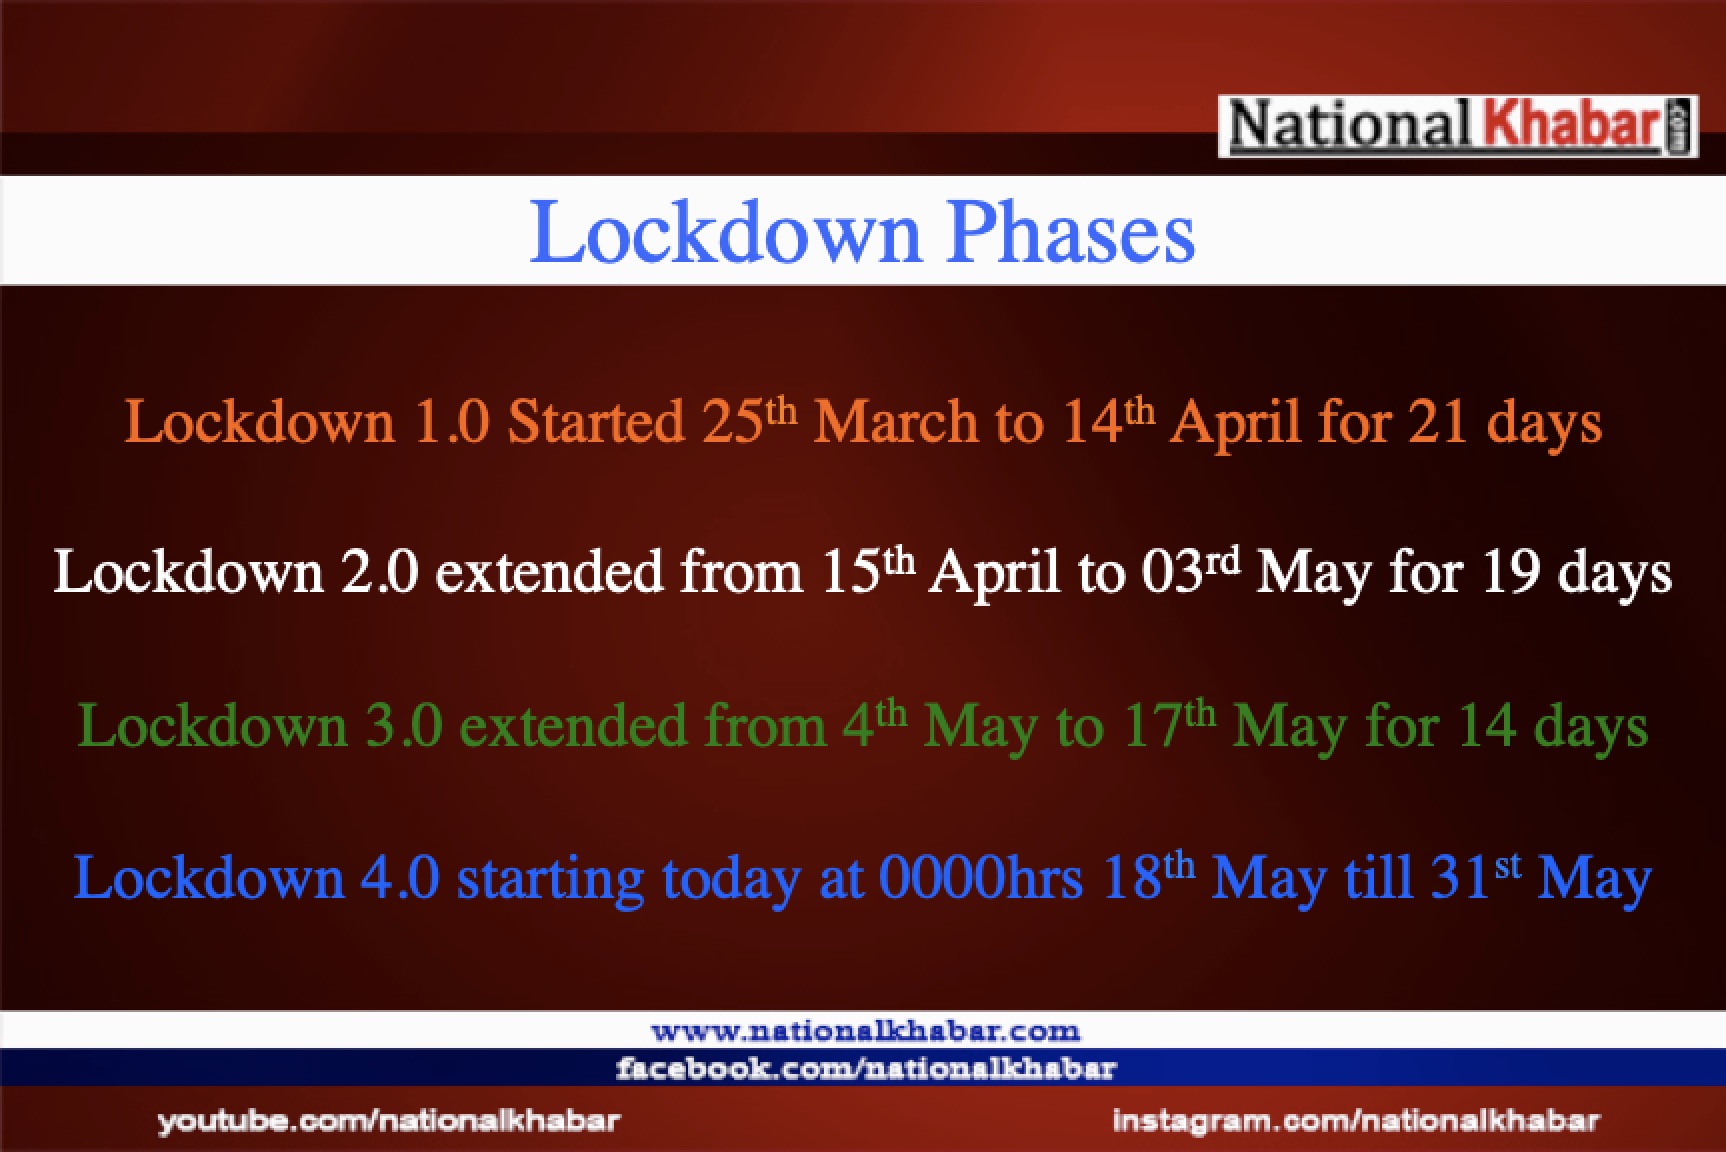 Lockdown 4.0: its extended till May 31